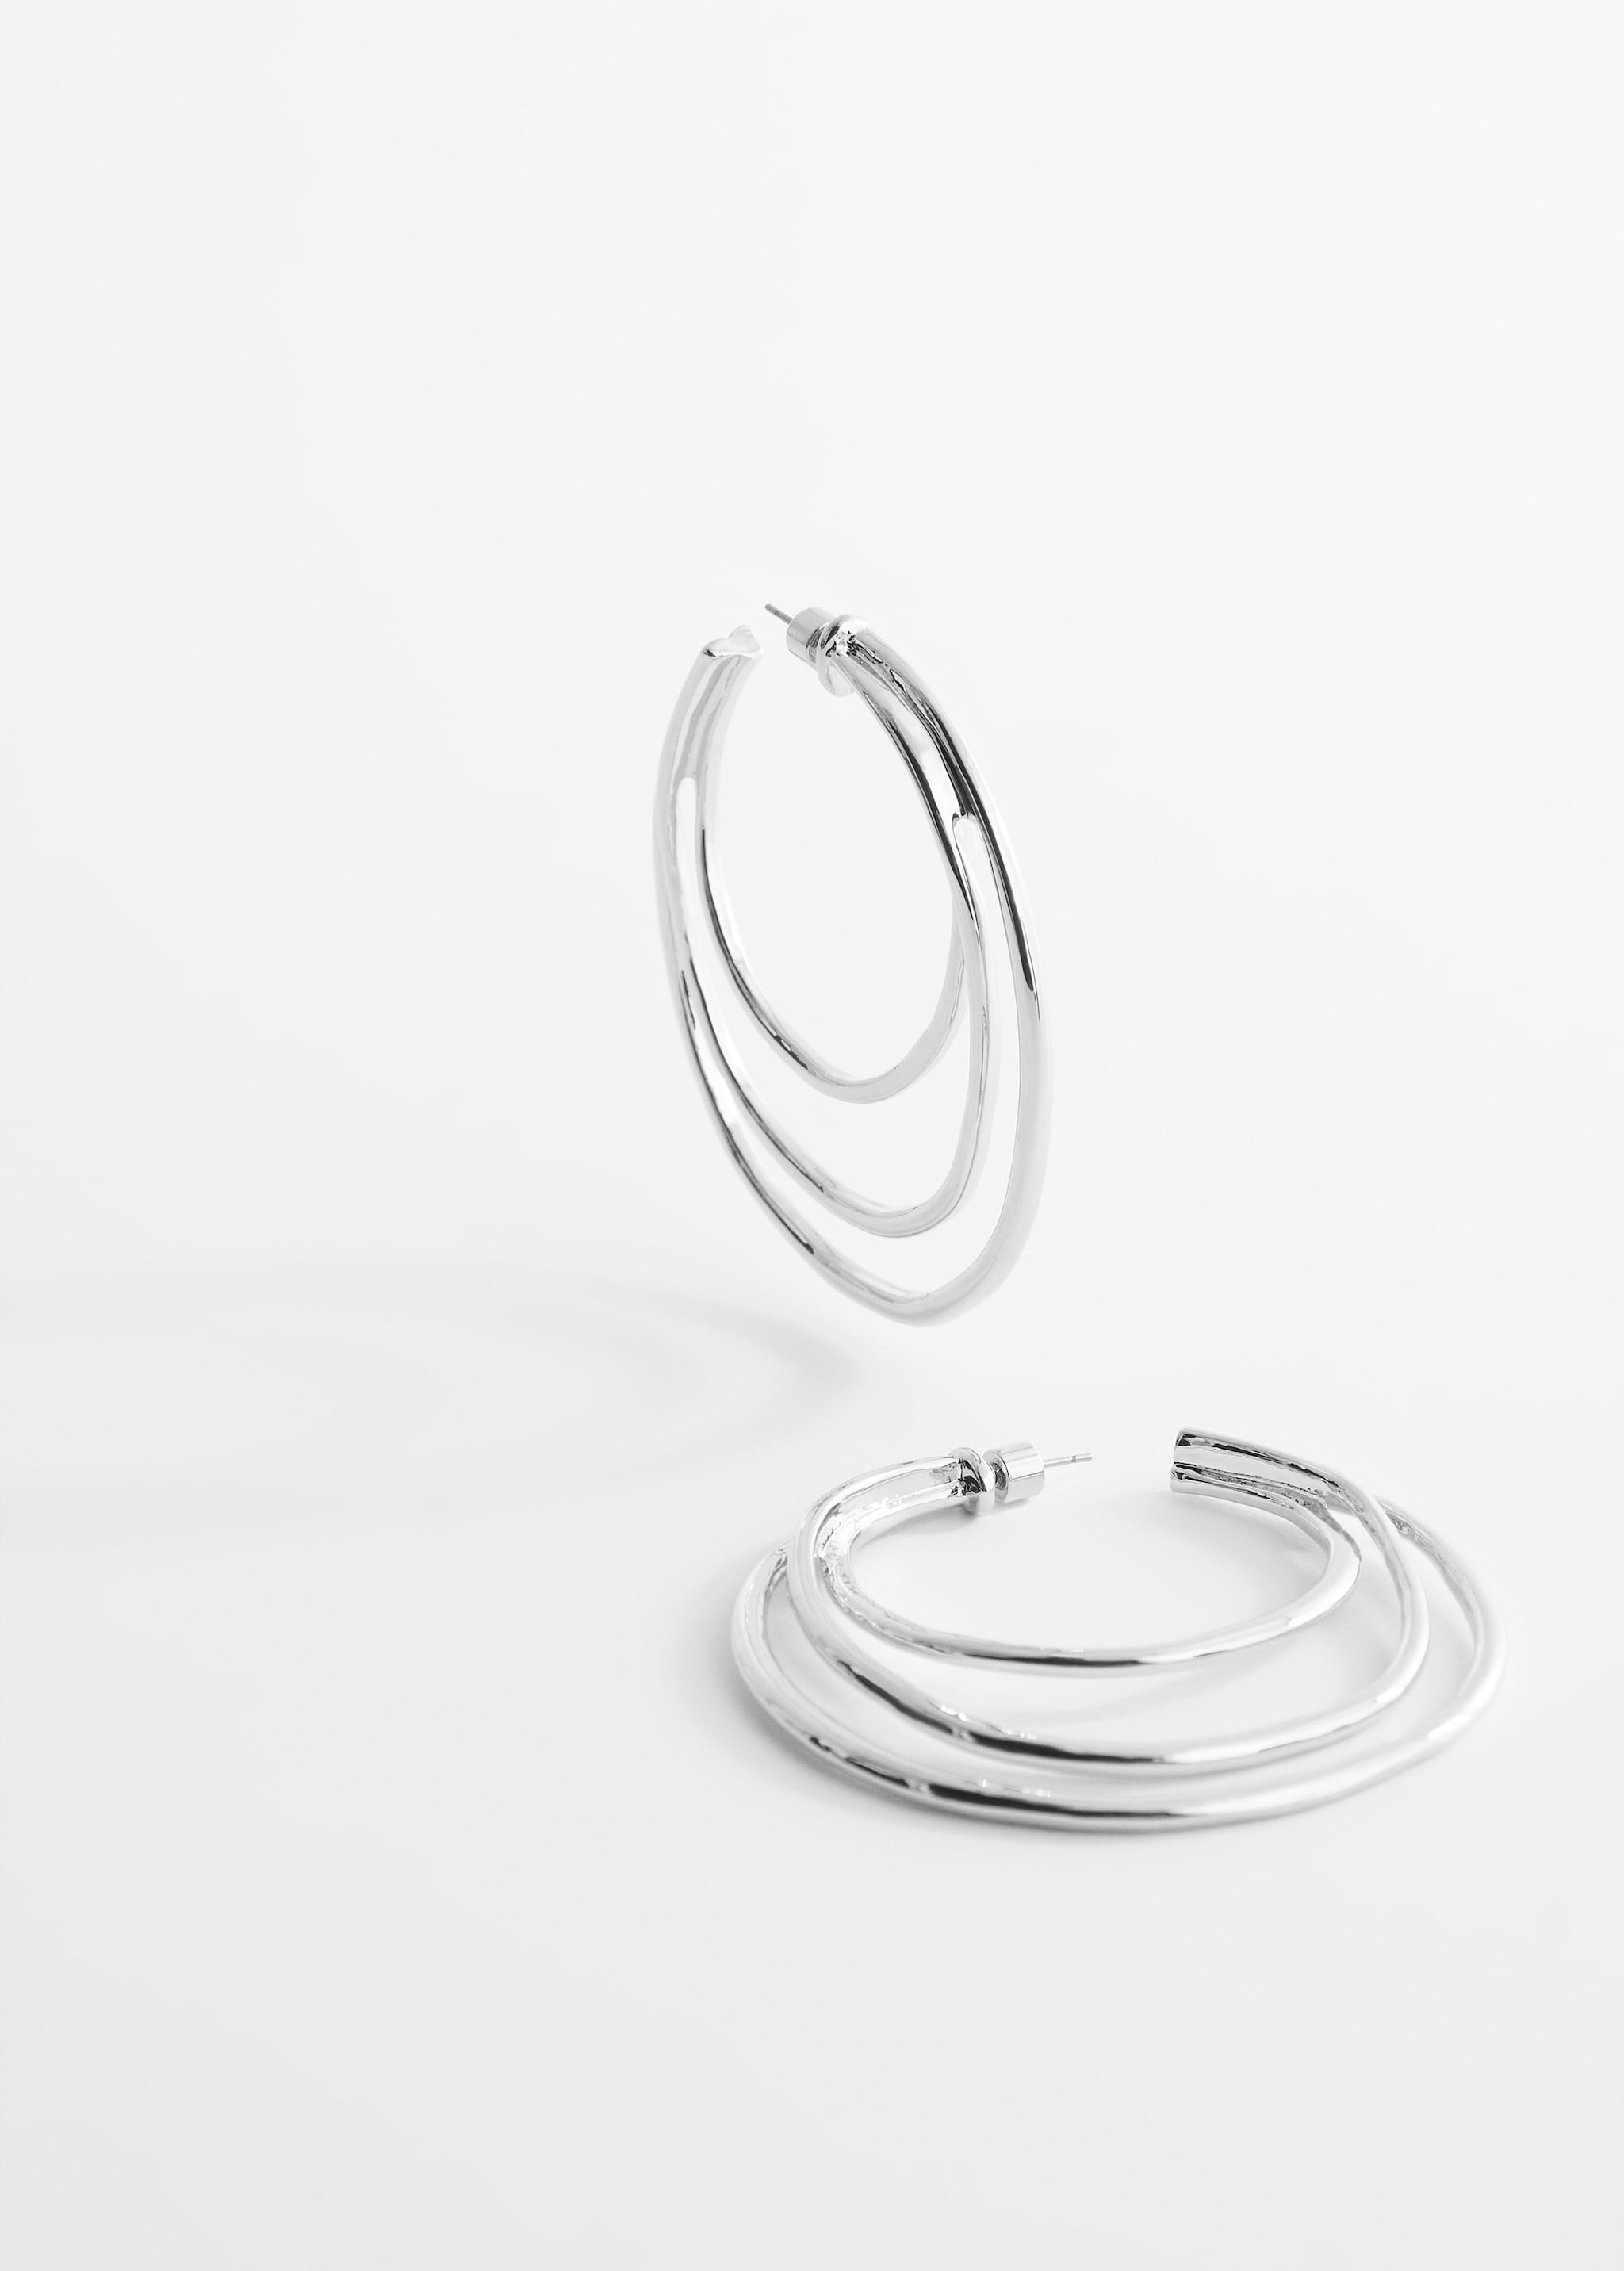 Three hoop earrings - Details of the article 1